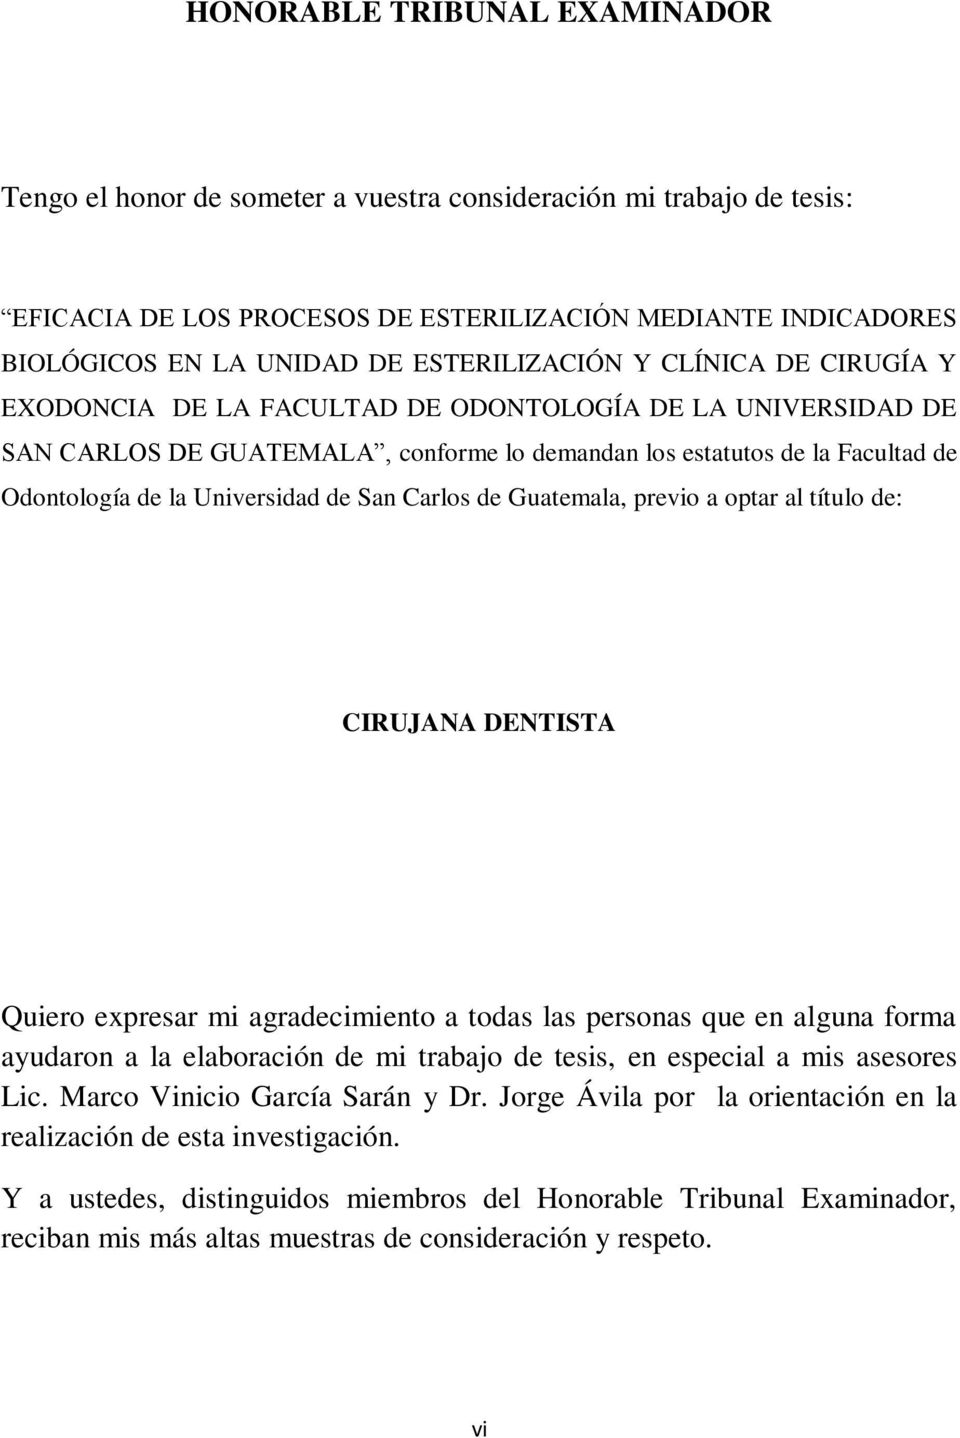 Universidad de San Carlos de Guatemala, previo a optar al título de: CIRUJANA DENTISTA Quiero expresar mi agradecimiento a todas las personas que en alguna forma ayudaron a la elaboración de mi